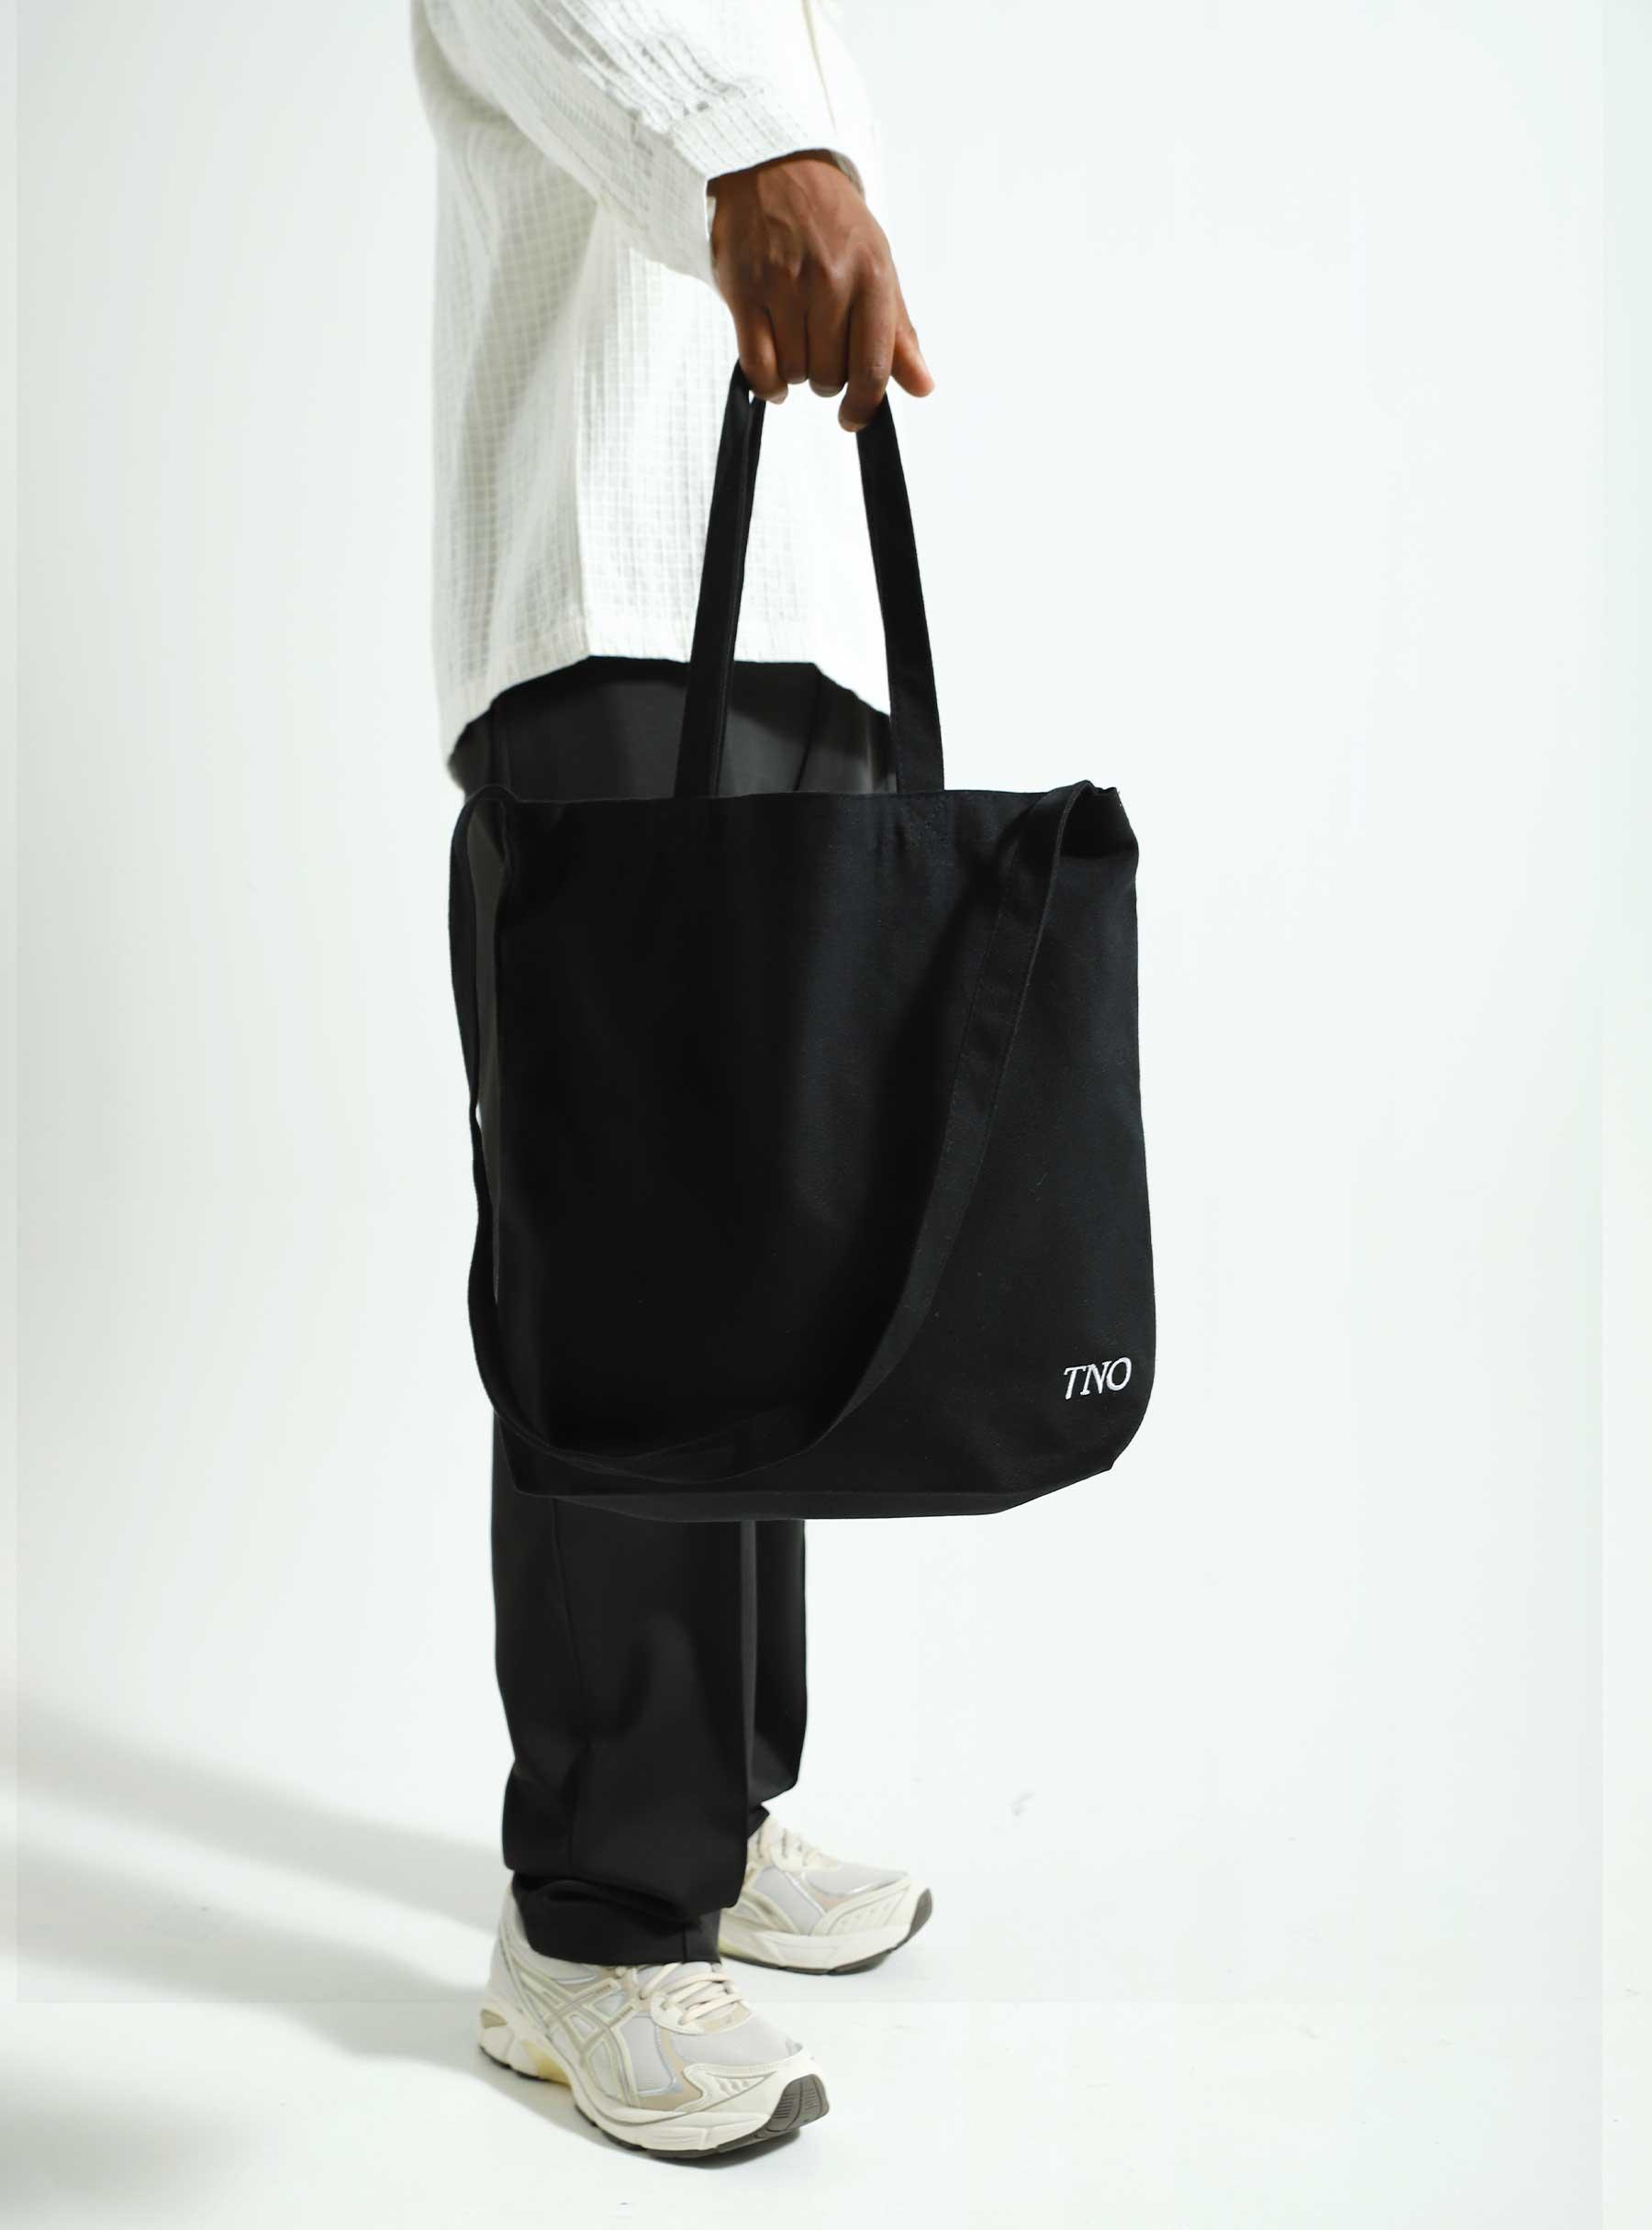 CATNA Tote Bag Black 900CATF23.999